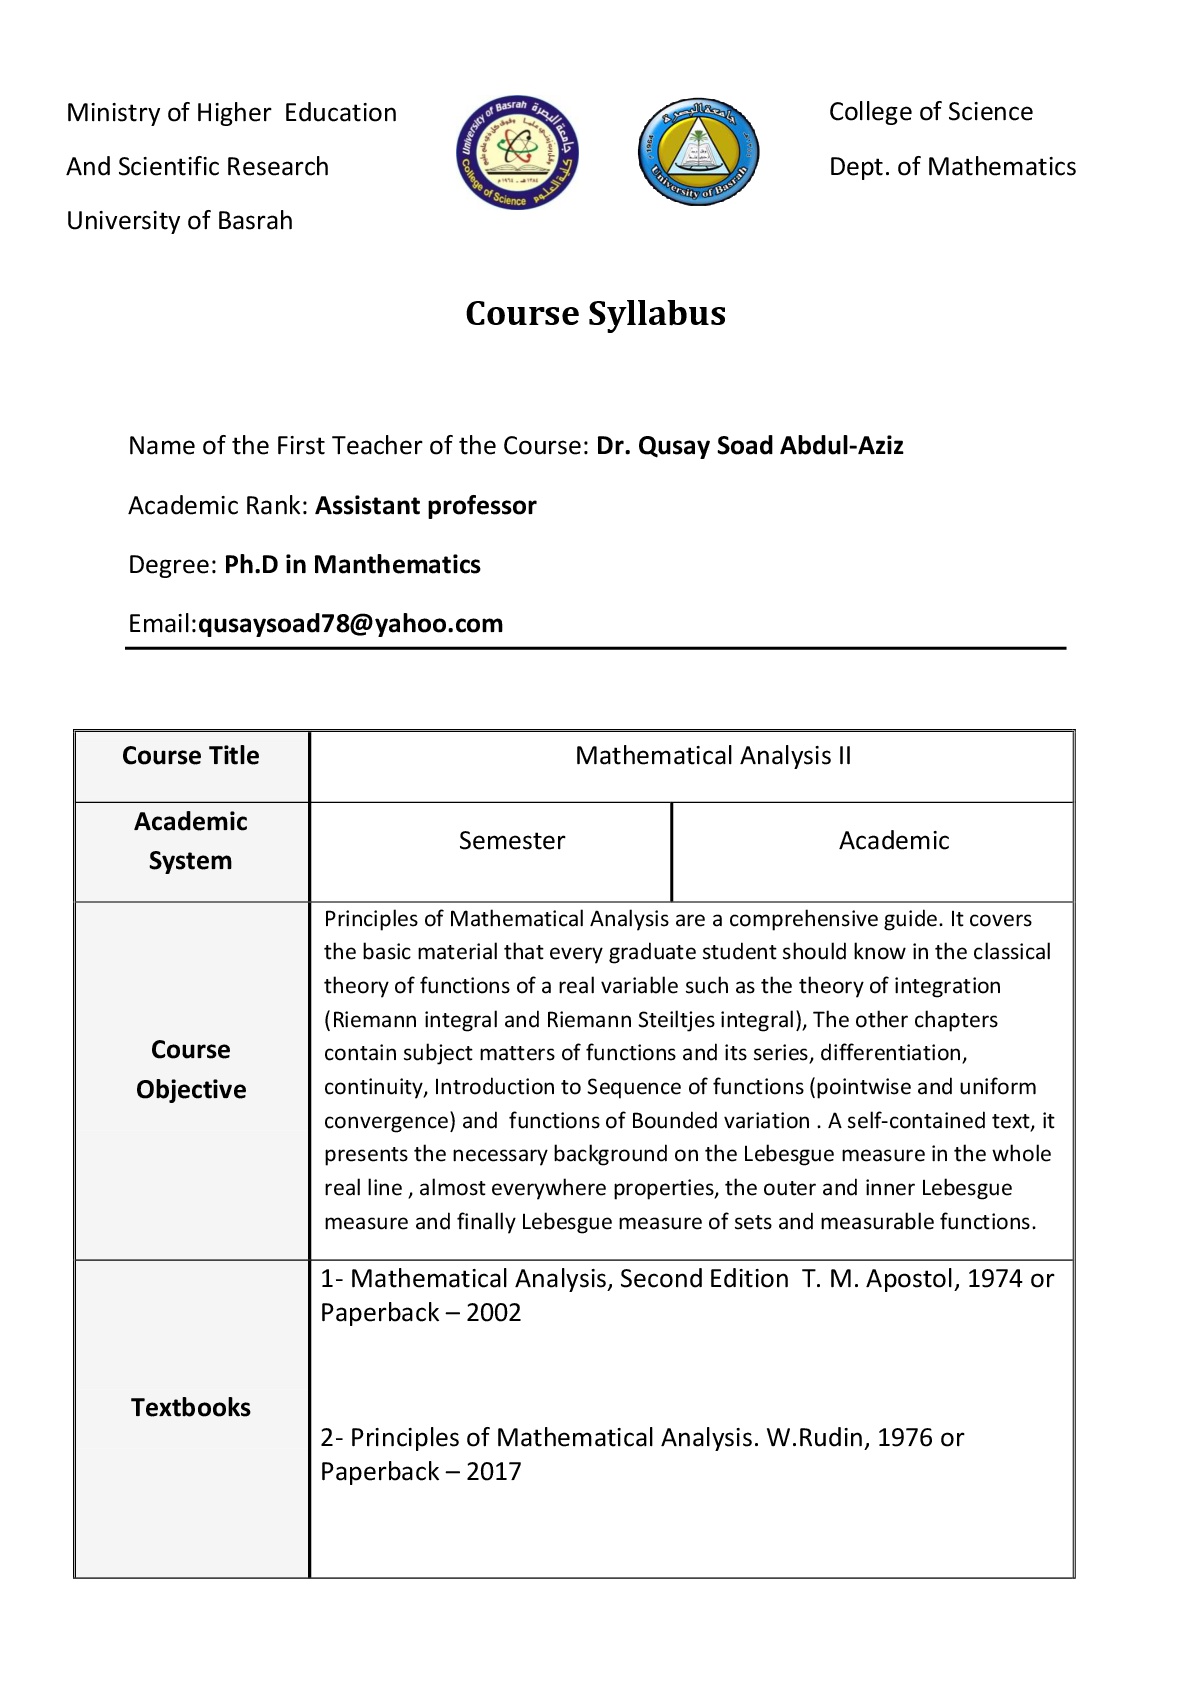 Course Syllabus R332 001